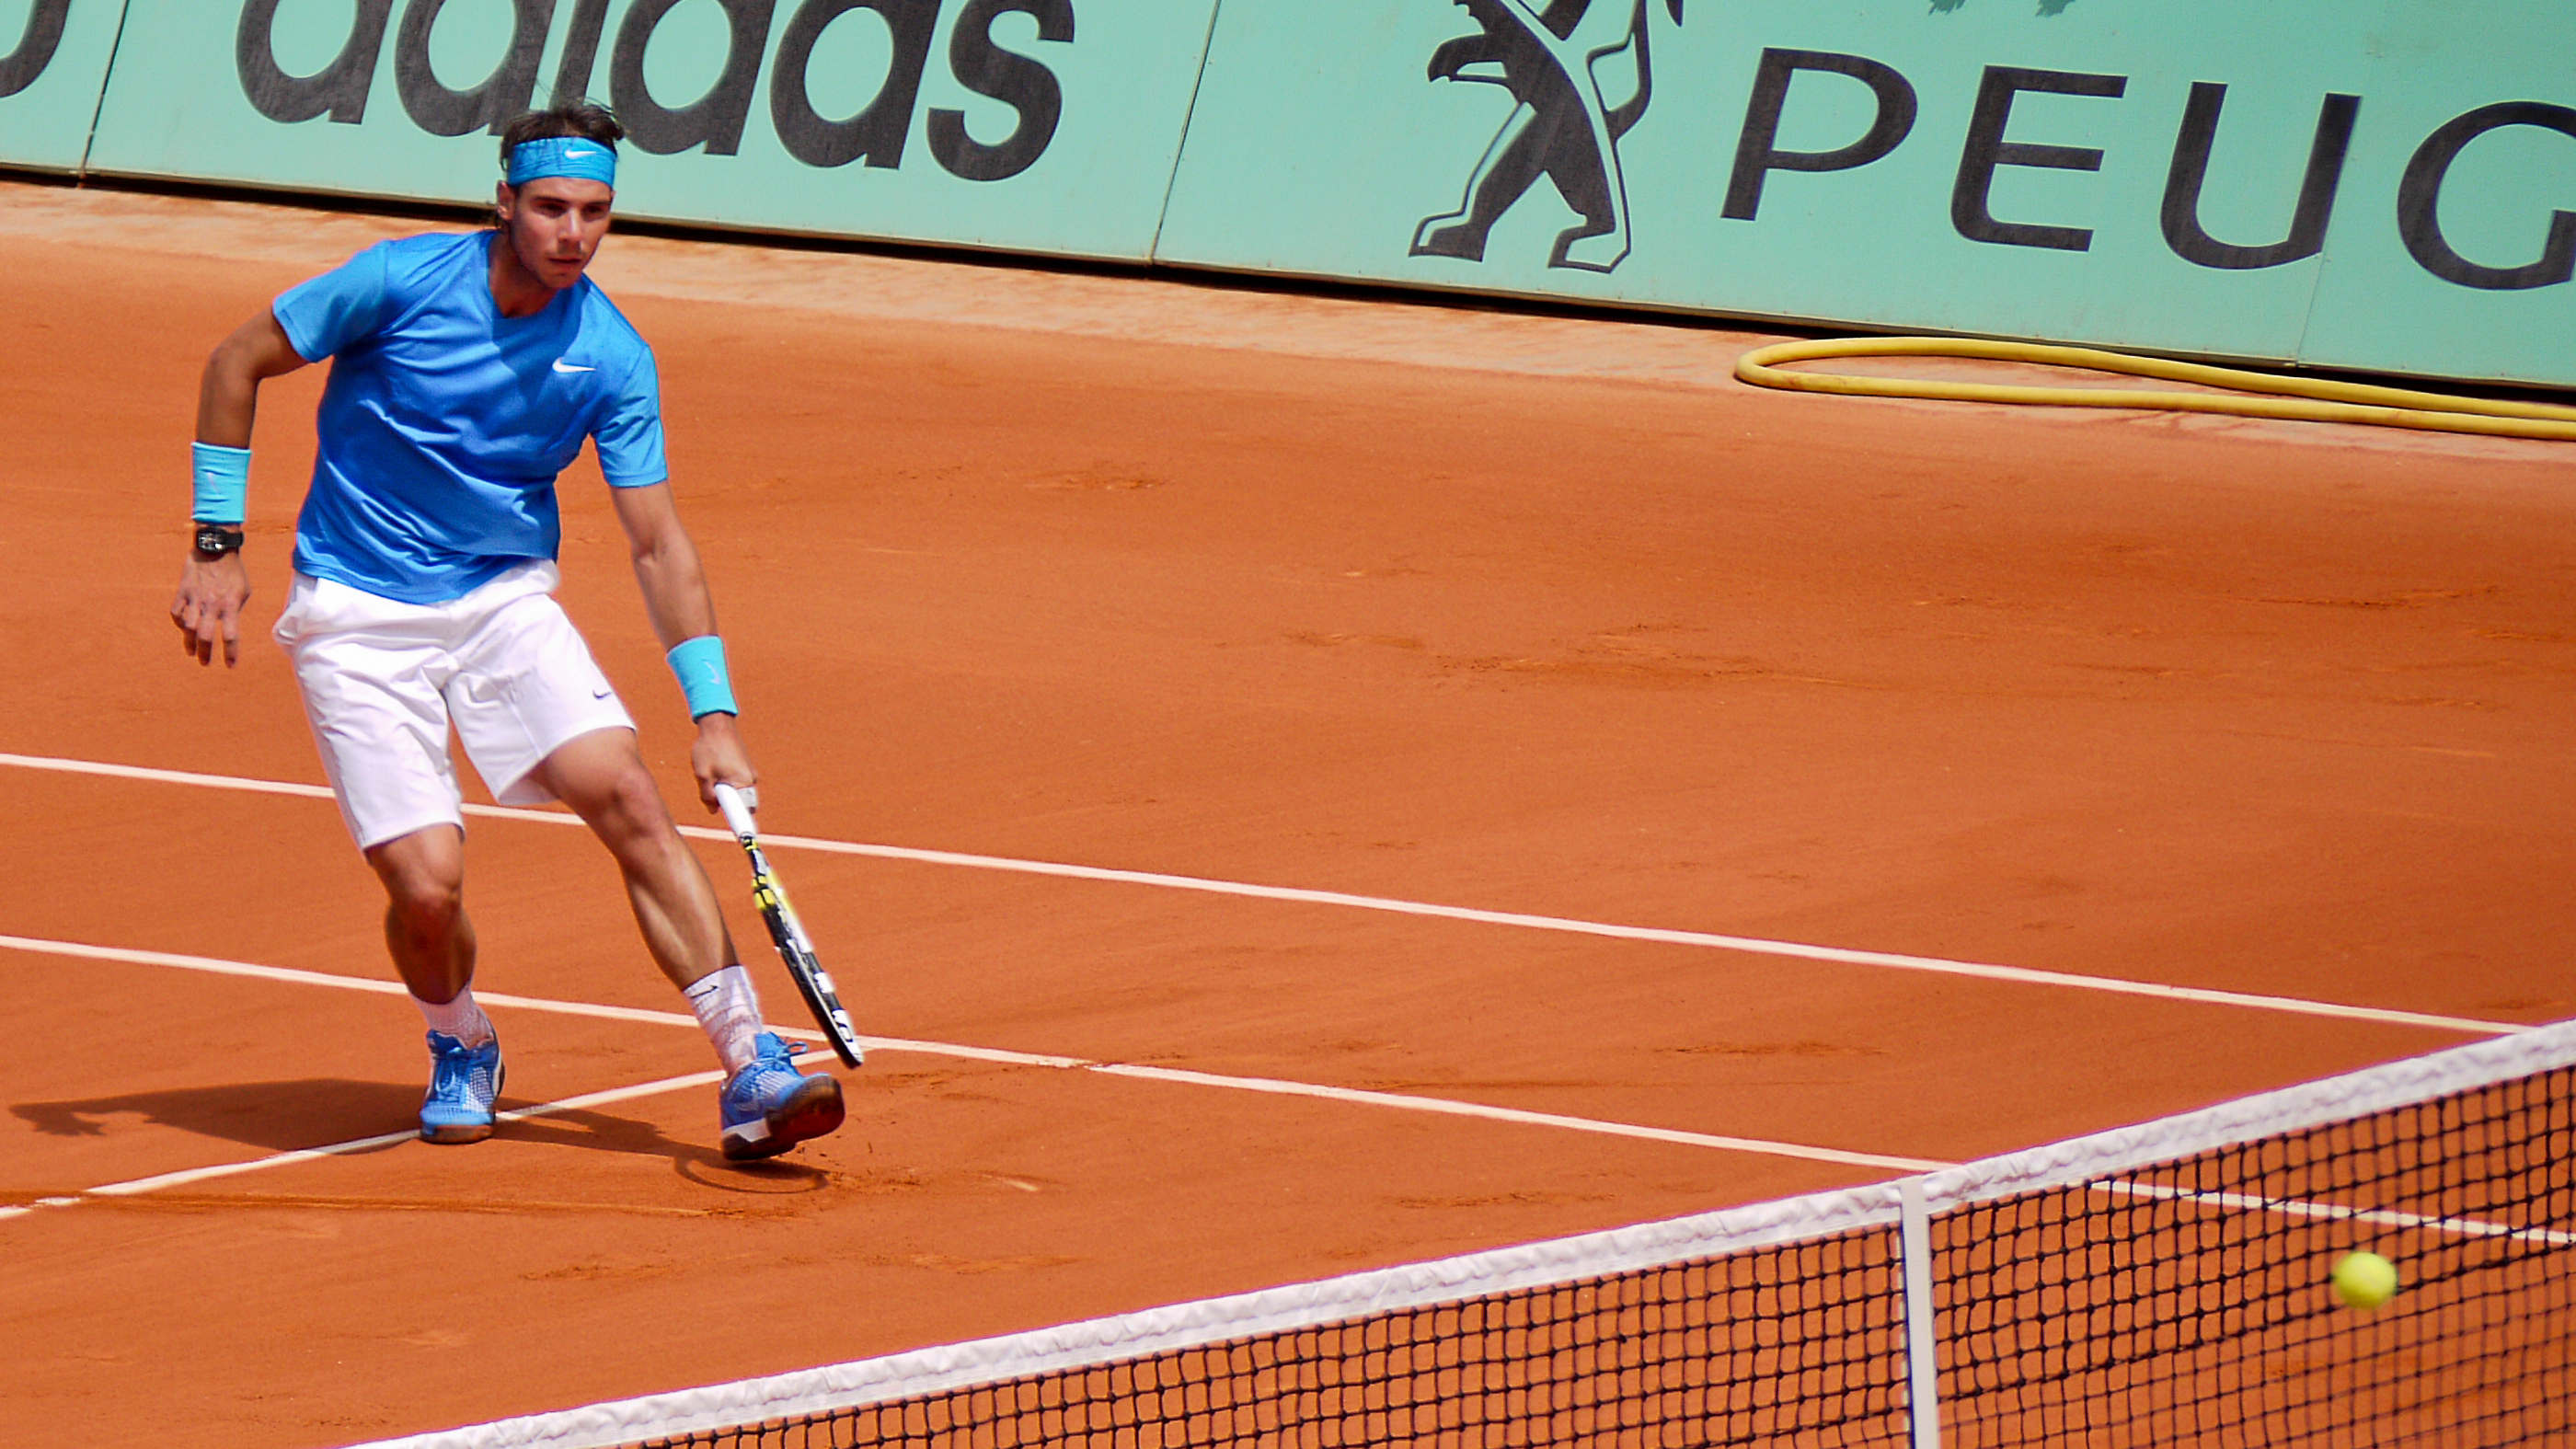 Paryż, 26 listopada 2013 – Grupa Eurosport ogłosiła dziś początek nowego długoterminowego partnerstwa z Francuską Federacją Tenisową (FFT) dotyczącego Rolanda Garrosa, turnieju Wielkiego Szlema, będącego jednocześnie otwartymi mistrzostwami Francji w tenisie ziemnym (French Open). Nowa umowa zrealizowana za pośrednictwem MP&Silva, […]